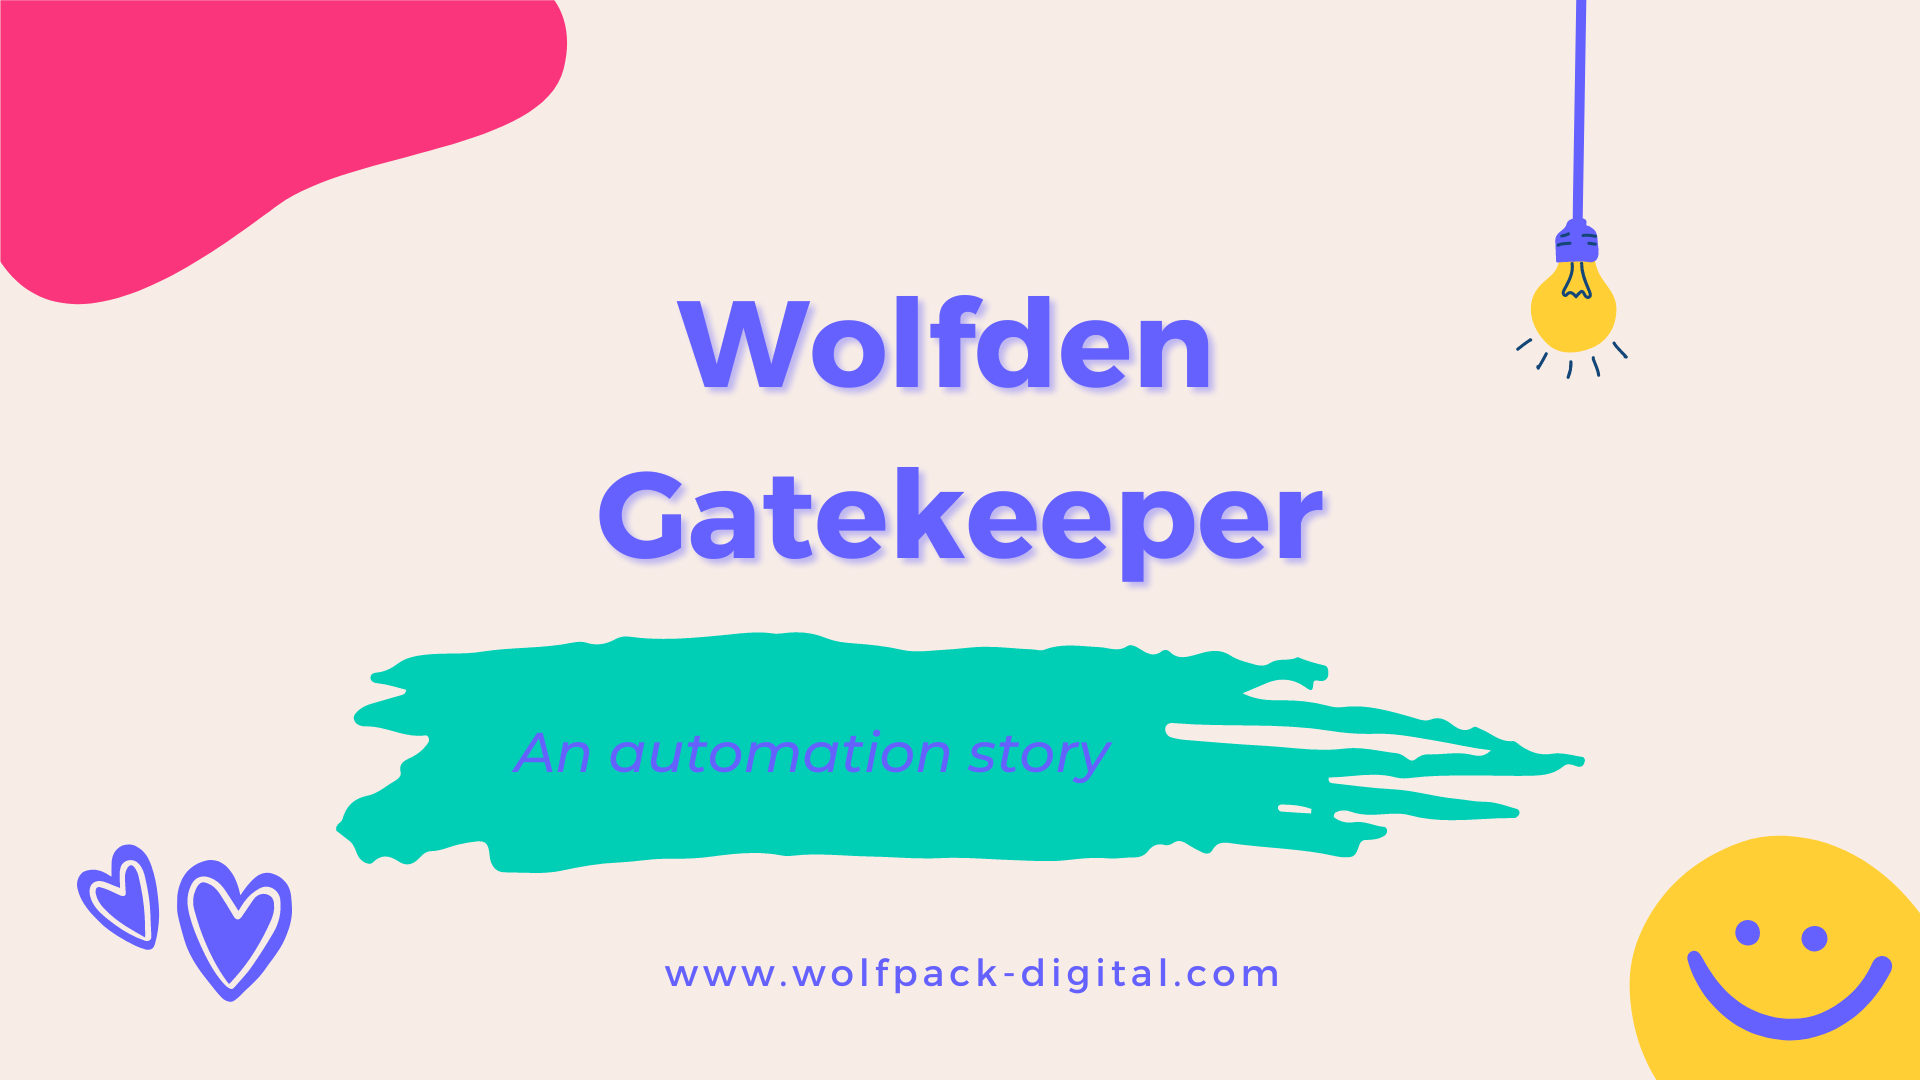 Wolfden Gatekeeper